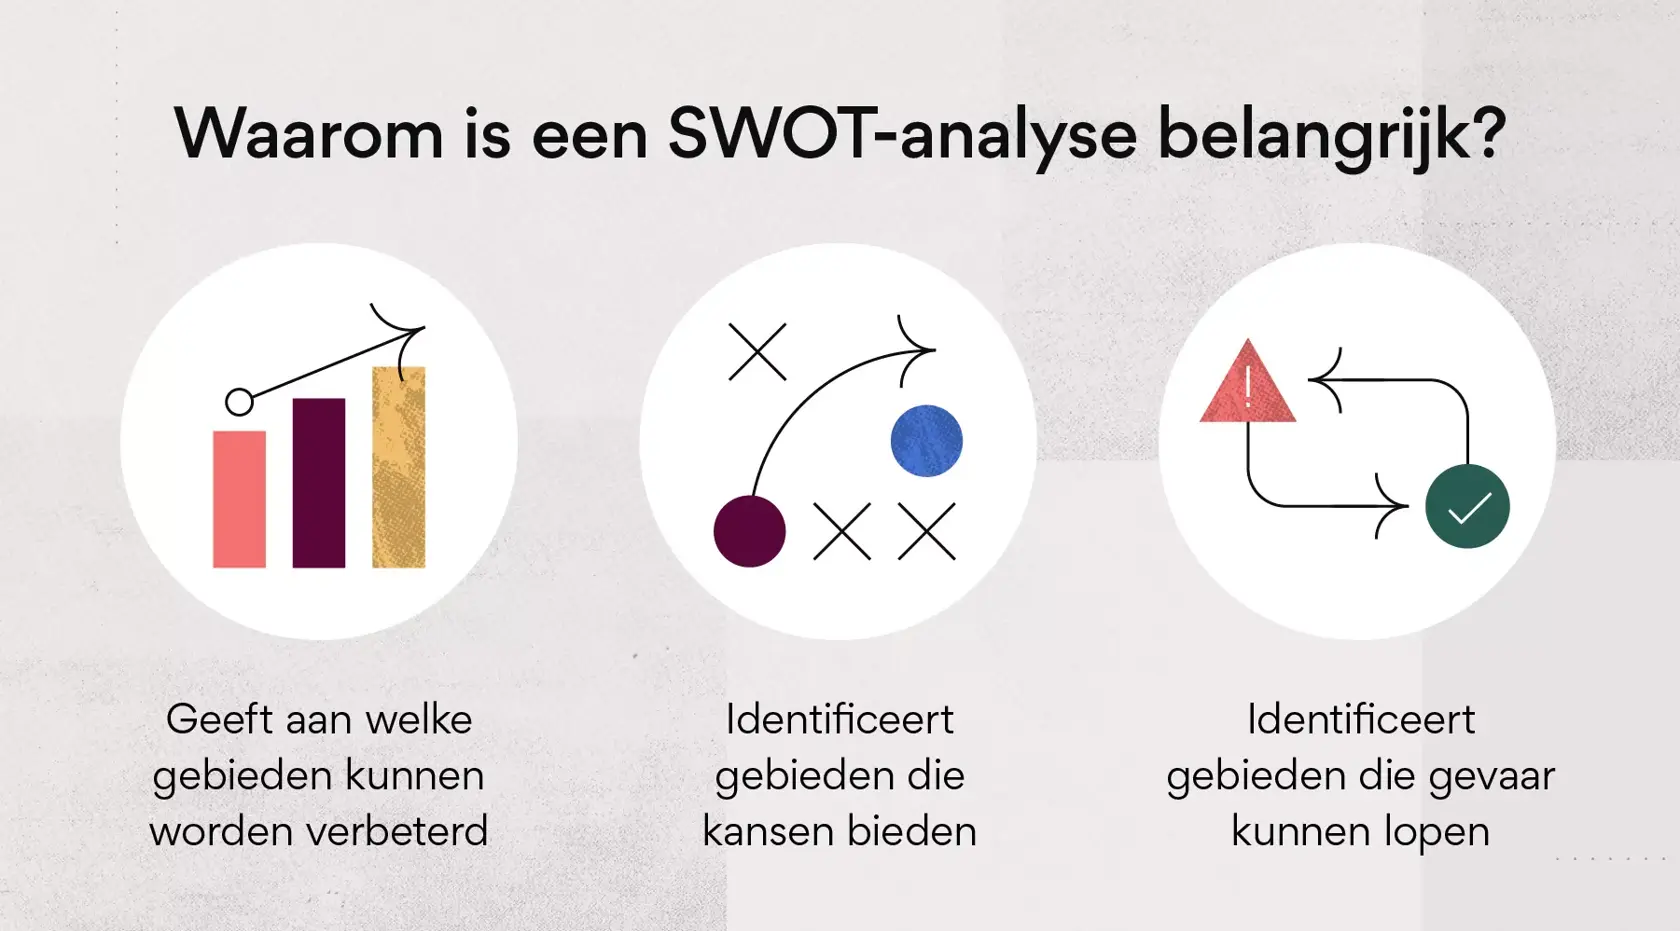 Waarom is een SWOT-analyse belangrijk?